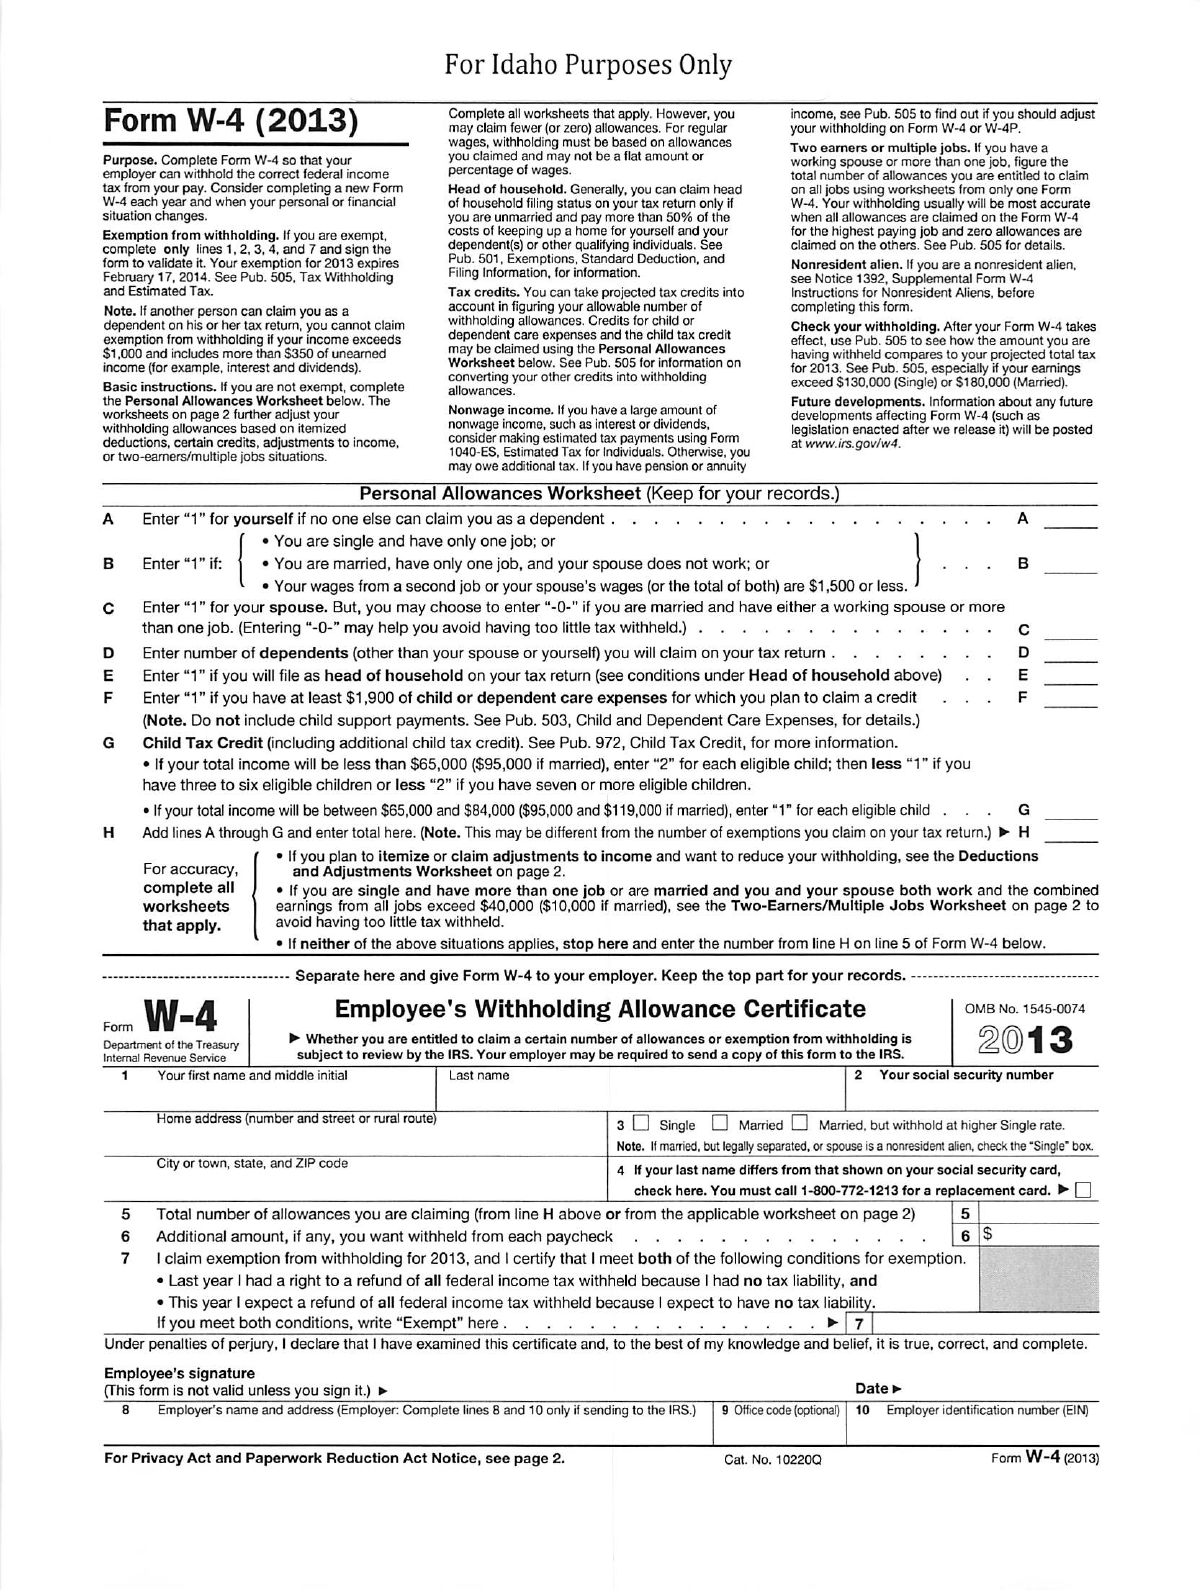 Idaho Form W-4 (2013)